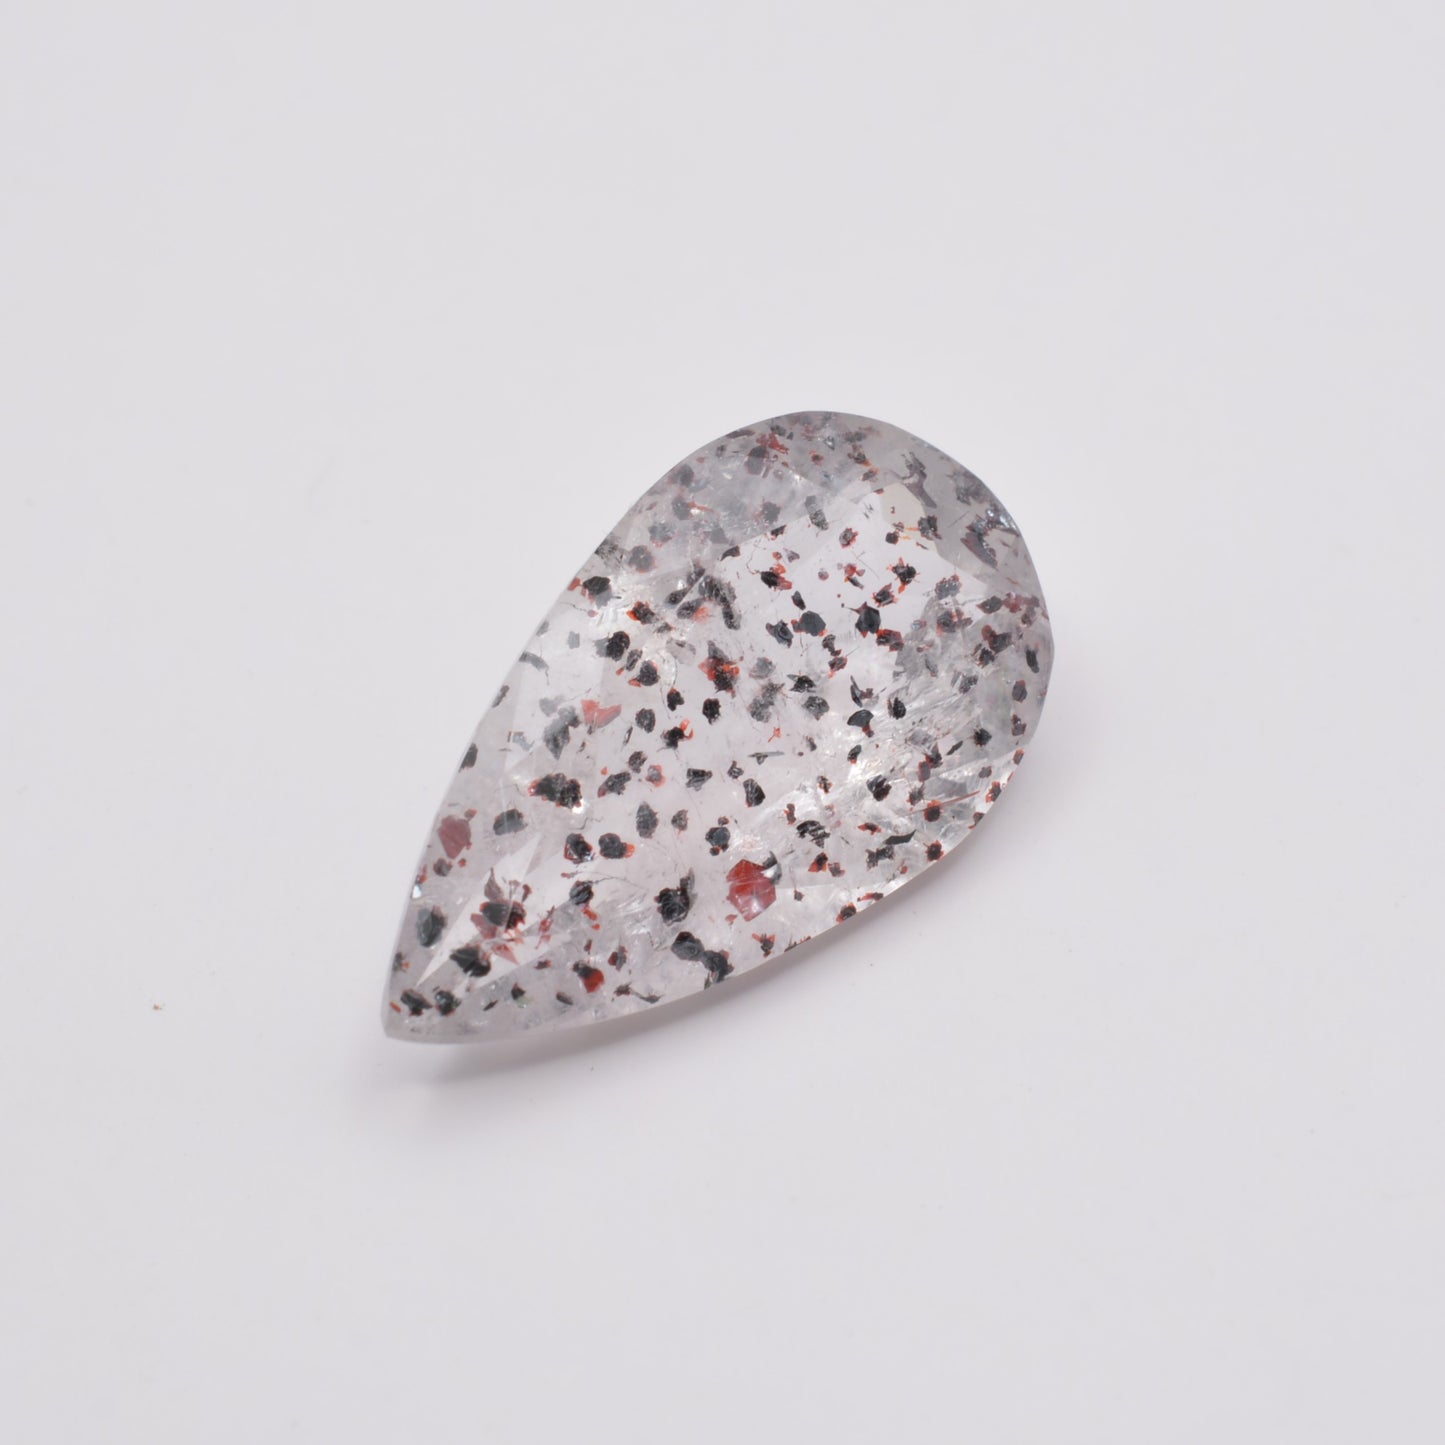 Quartz à inclusions d'Hématite 9,19ct - pierre précieuse - gemme